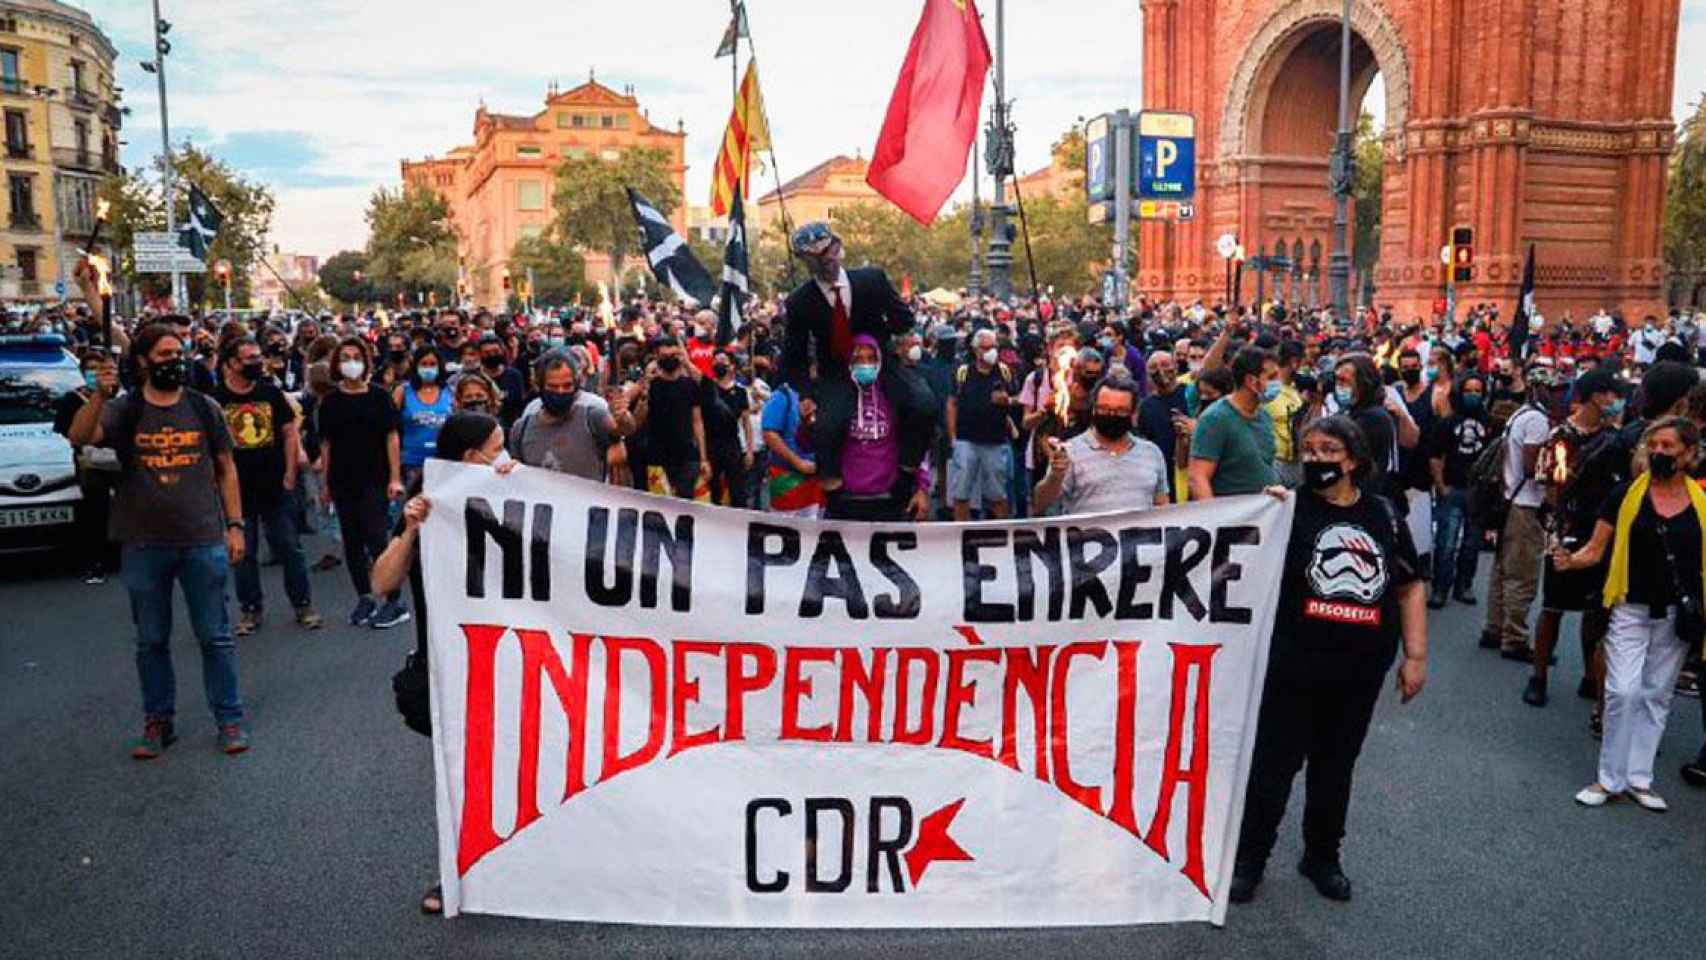 Imagen de la cabecera de la marcha de los CDR en Barcelona / CG